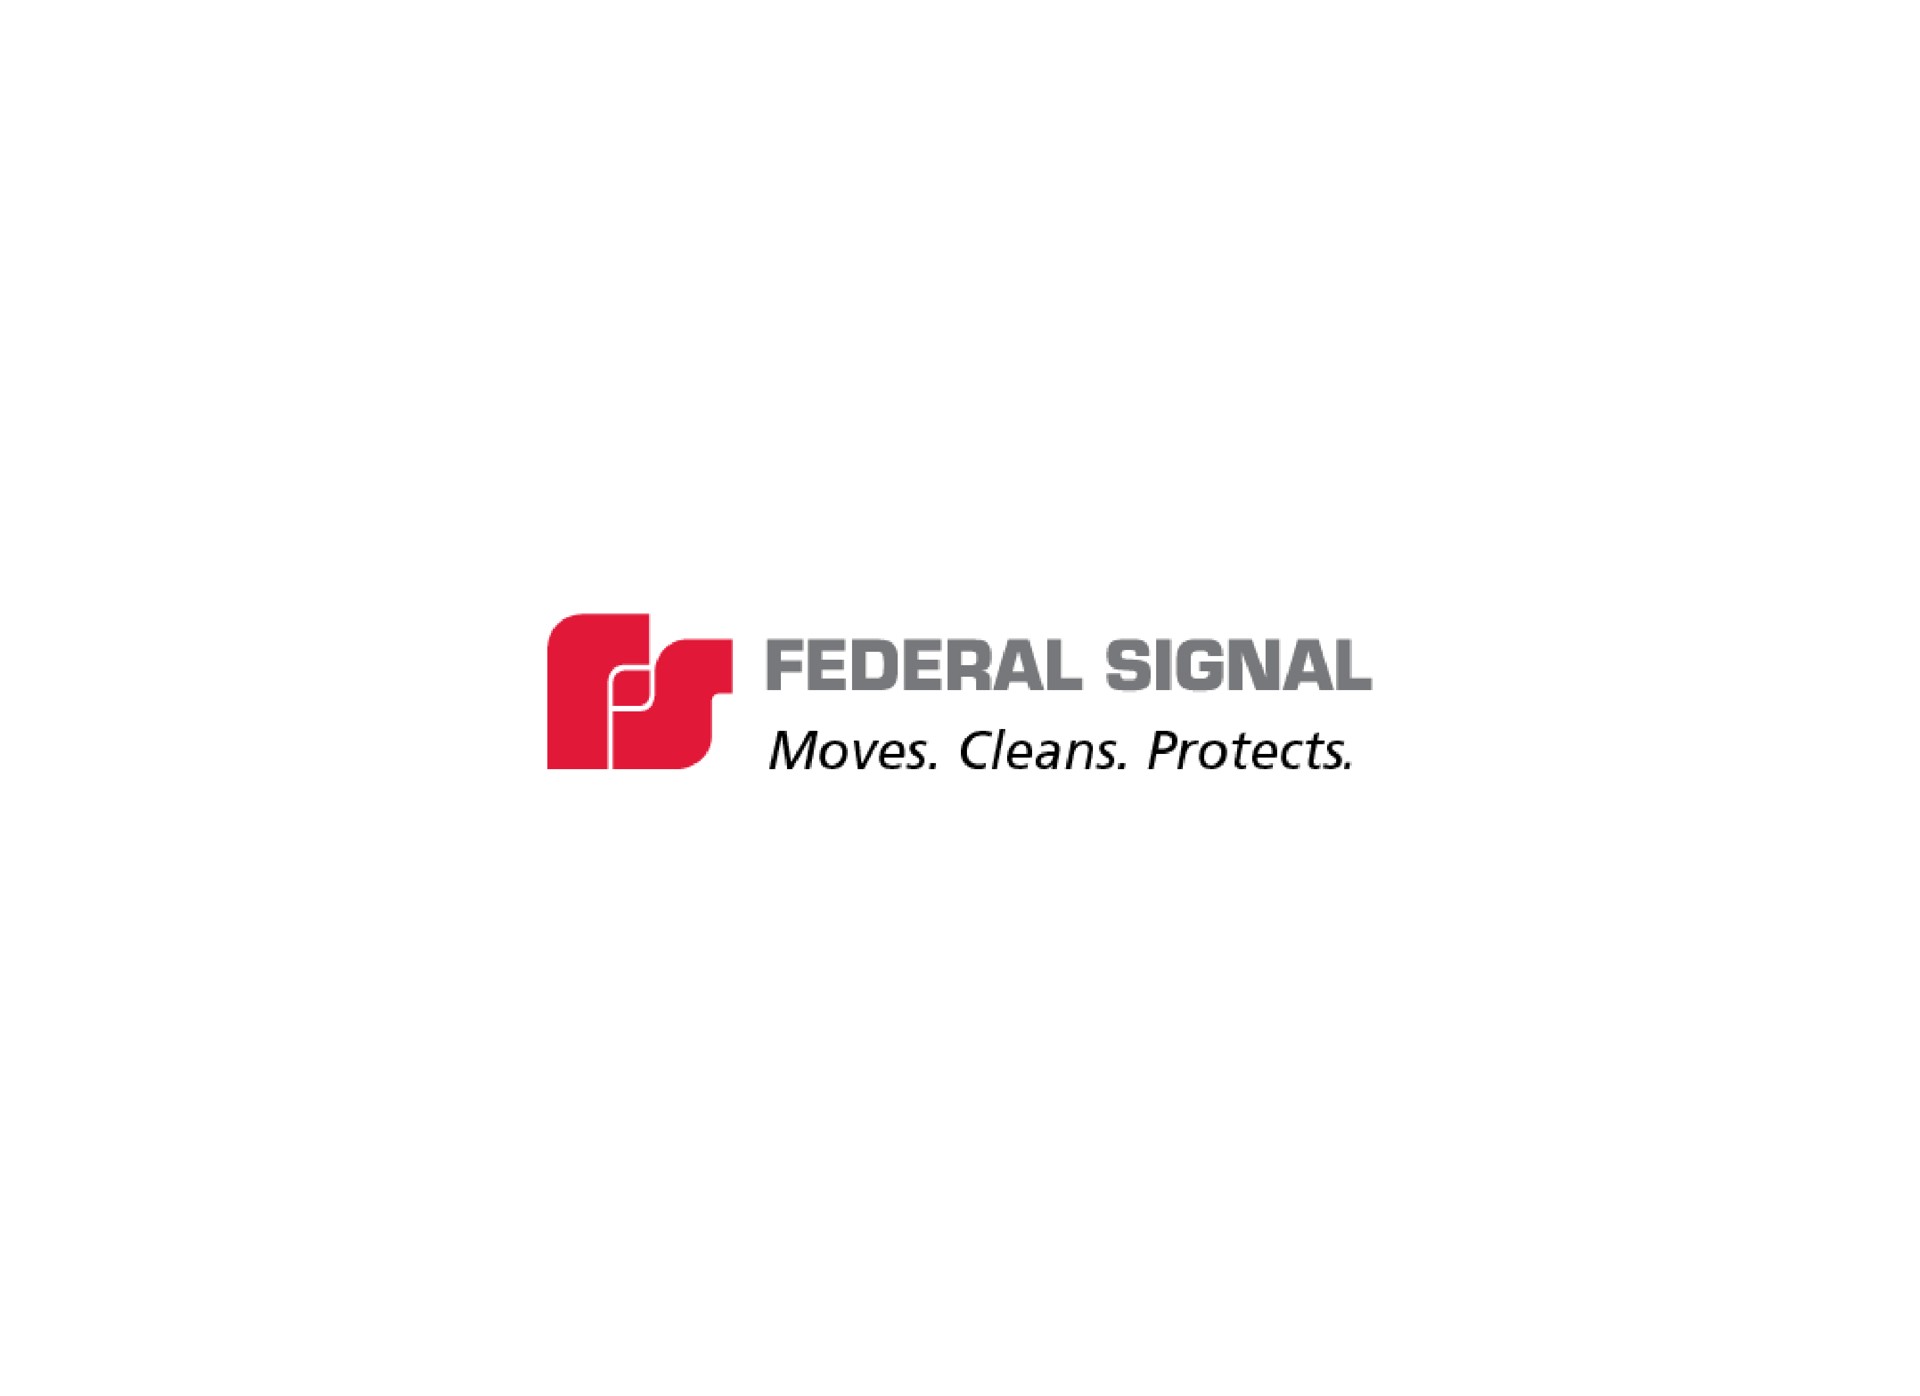 federal signal | Federal Signal